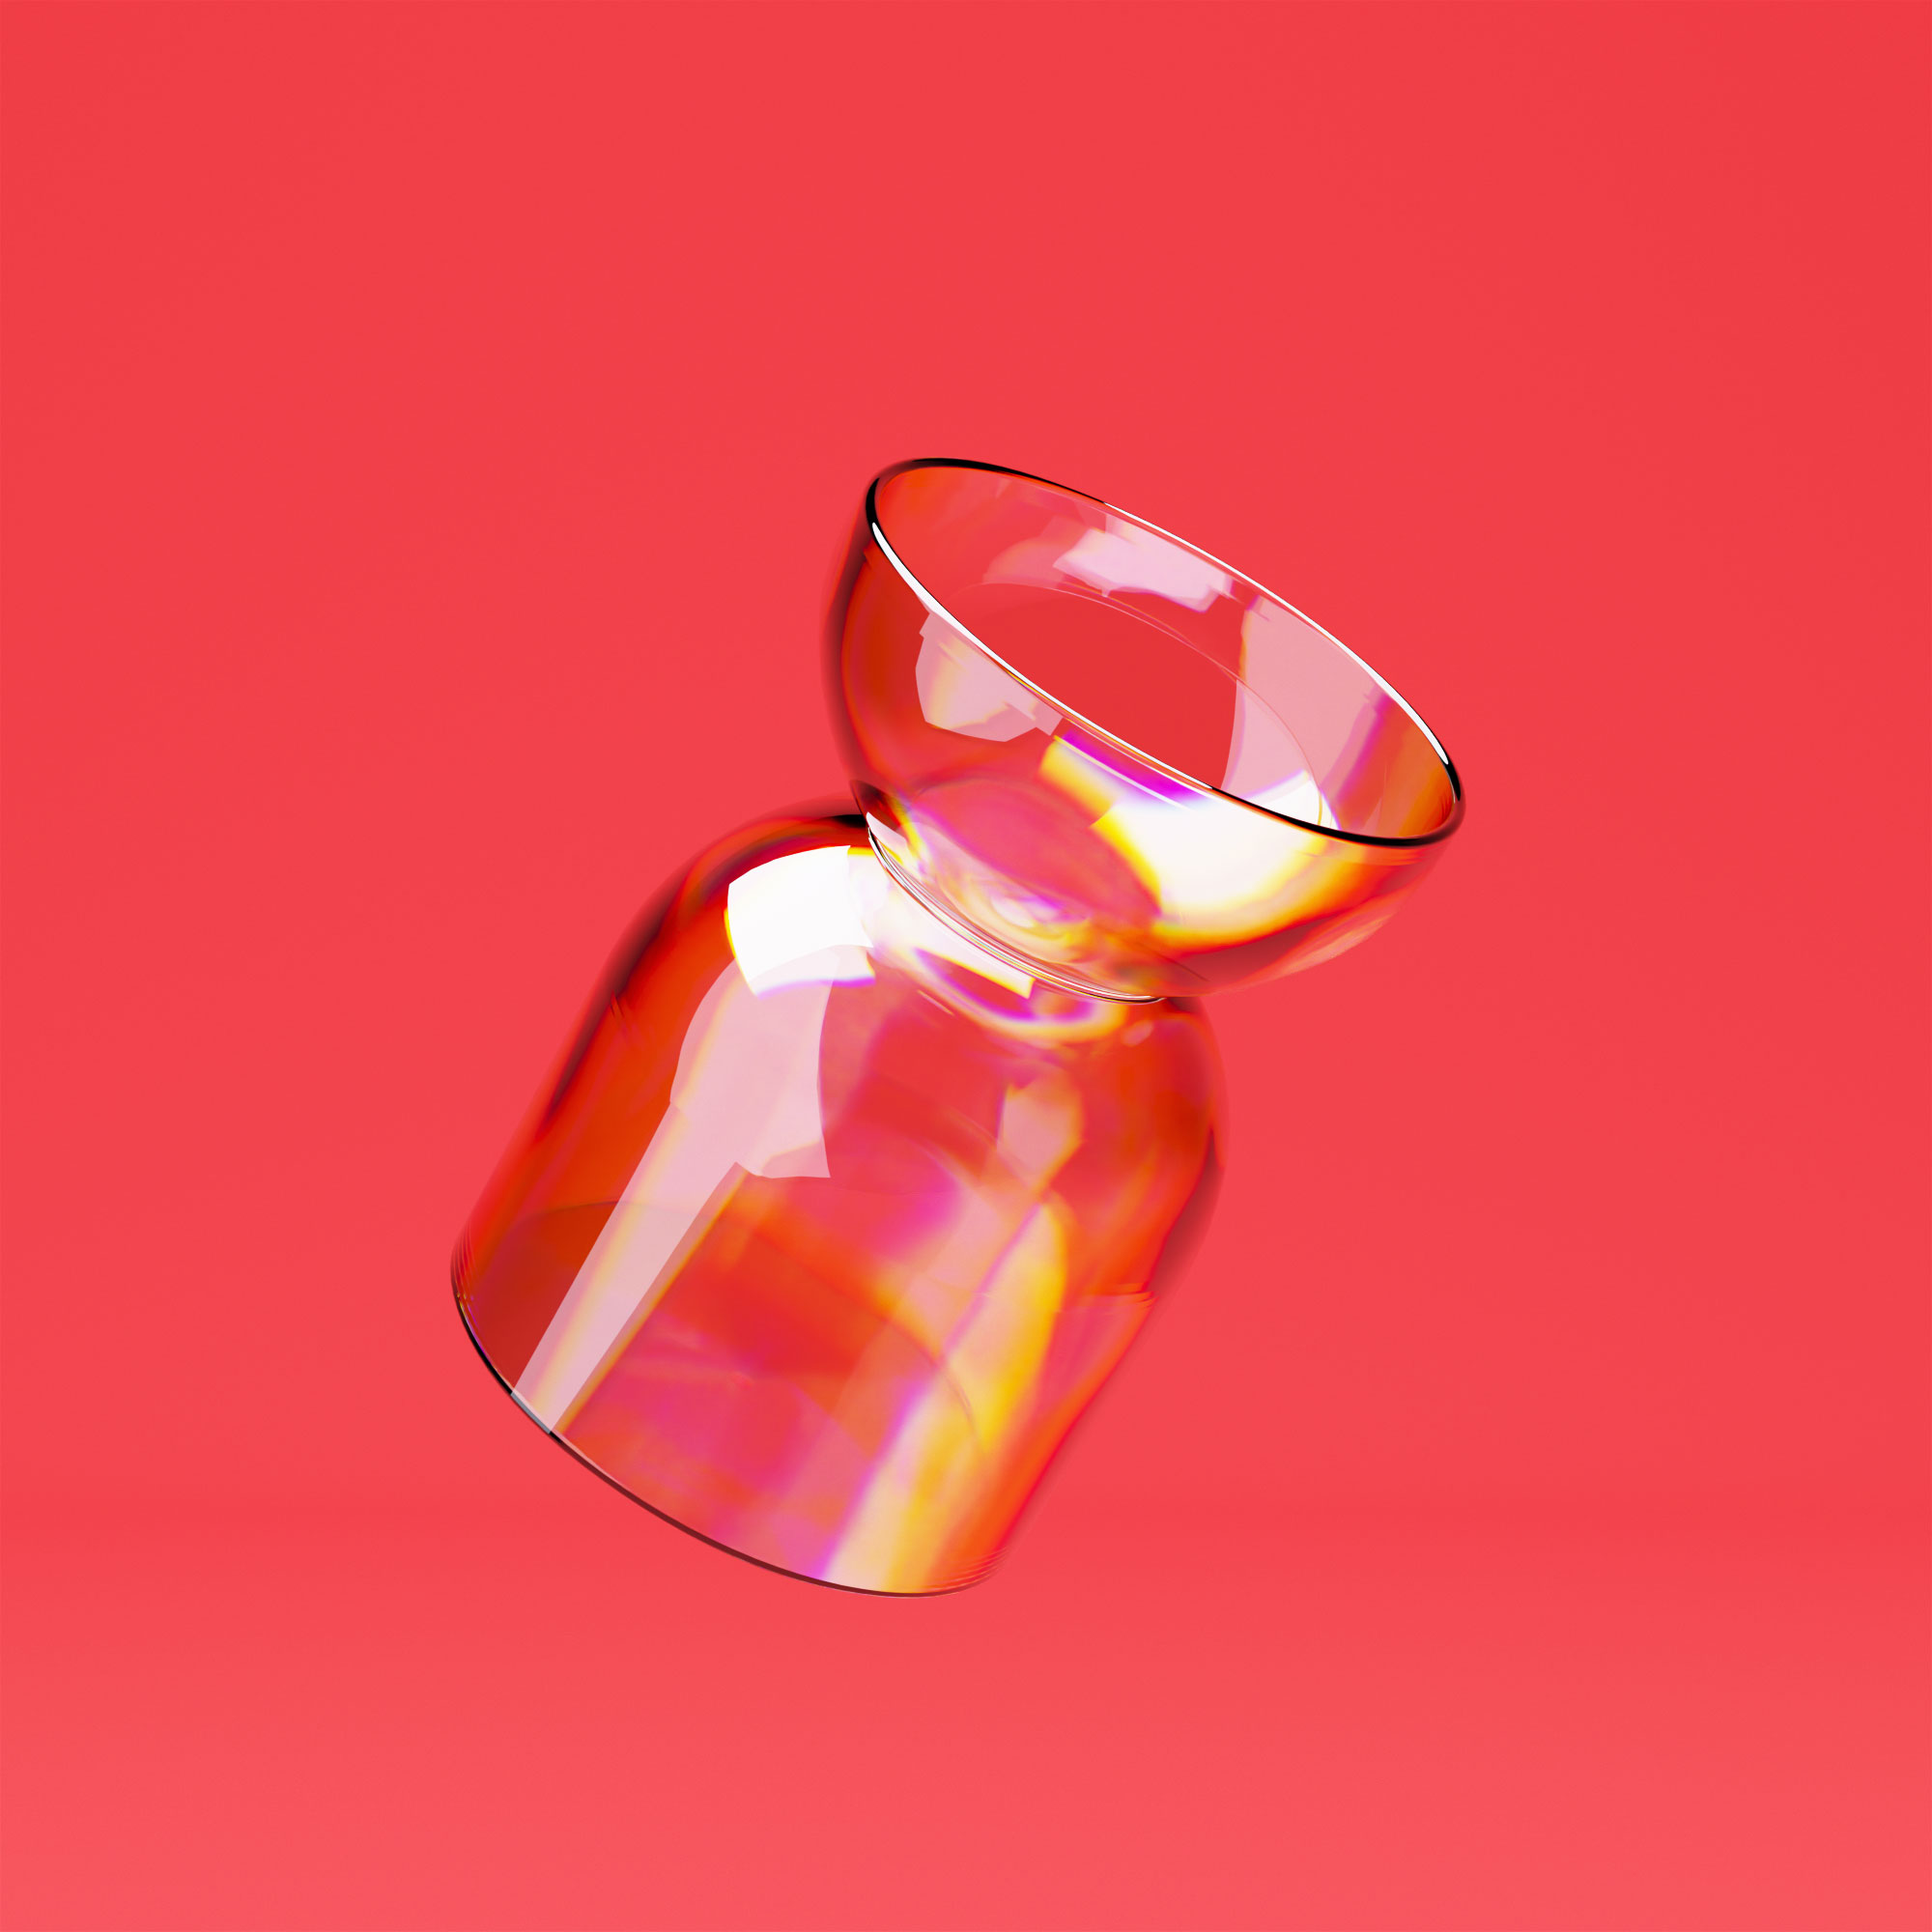 02_Vase_Glass